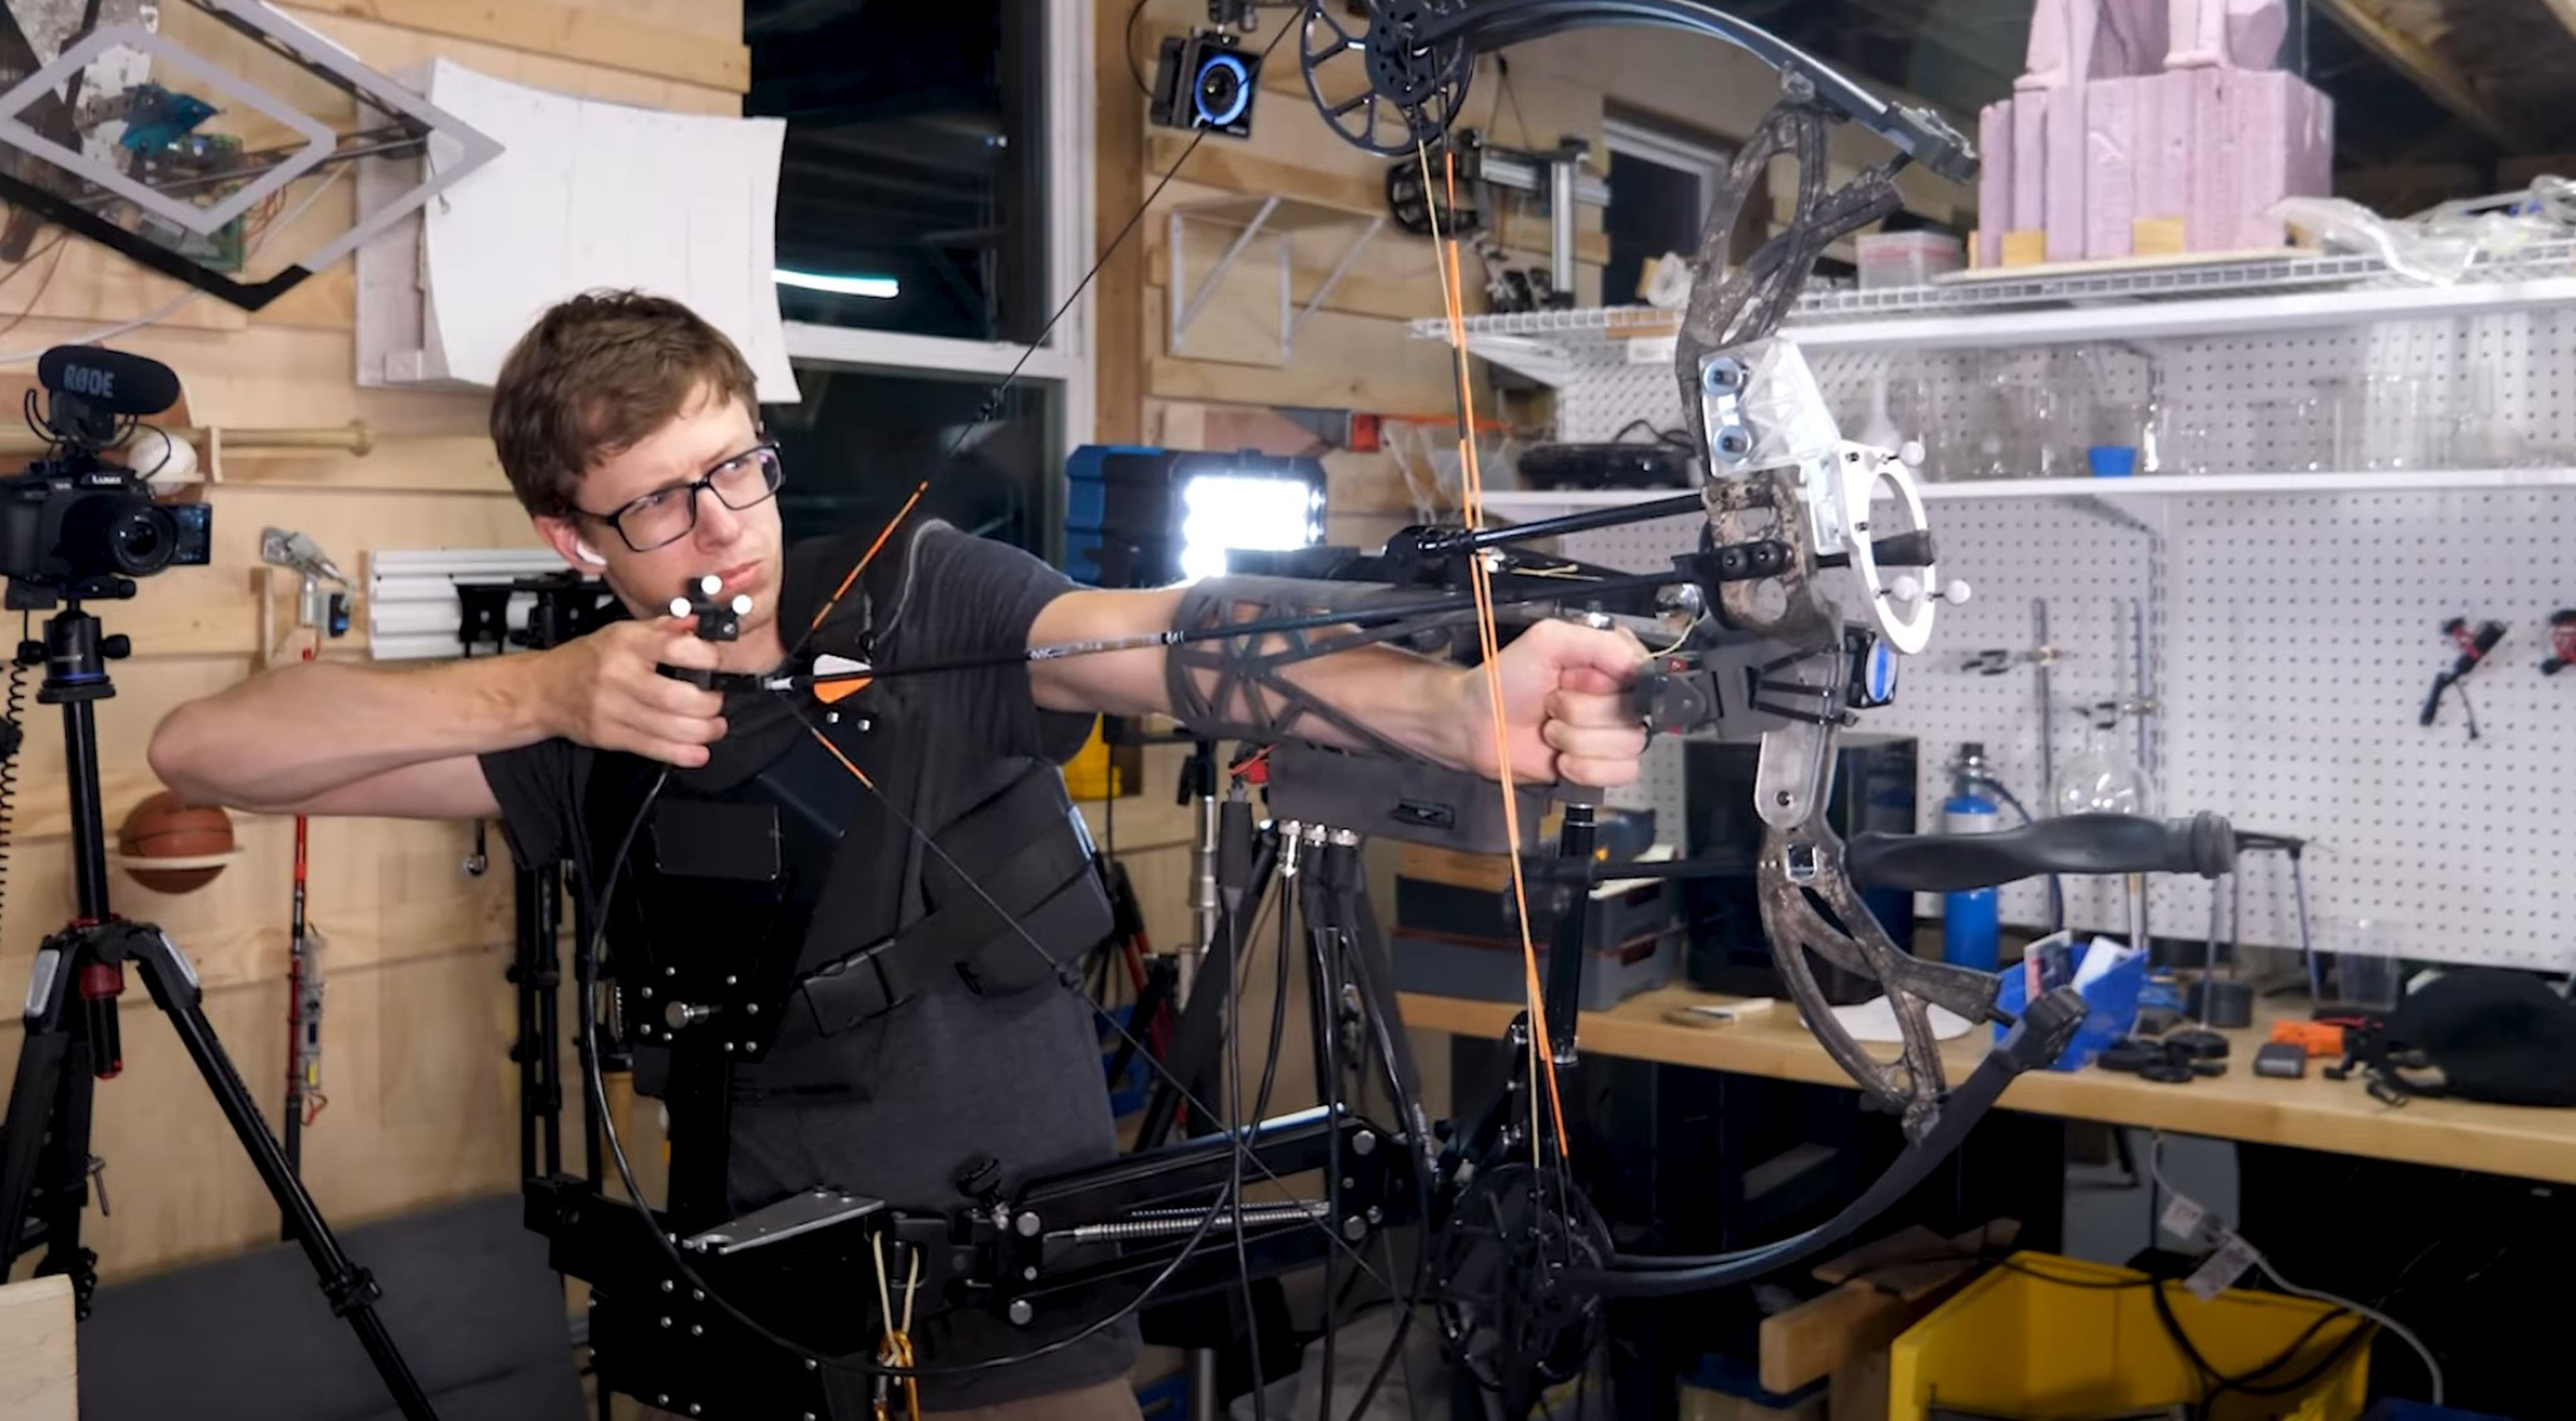 Fabrican en casa el arco robotizado con el que no se puede de fallar ni un tiro